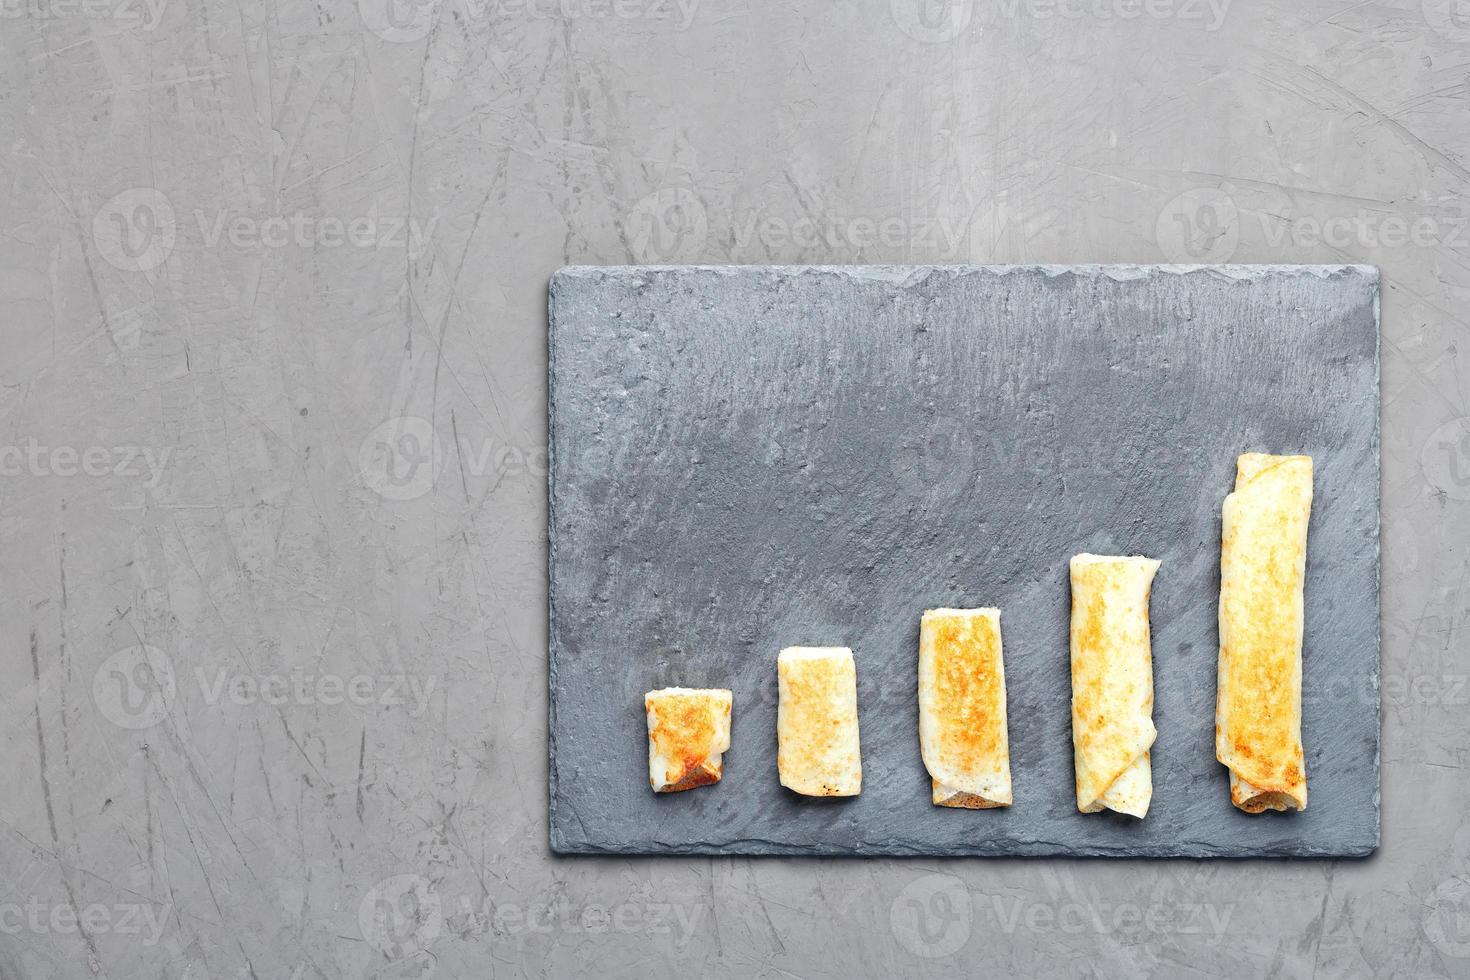 des crêpes au fromage cottage sur une ardoise grise sont disposées sous la forme d'une tendance croissante sur un fond de béton foncé. photo